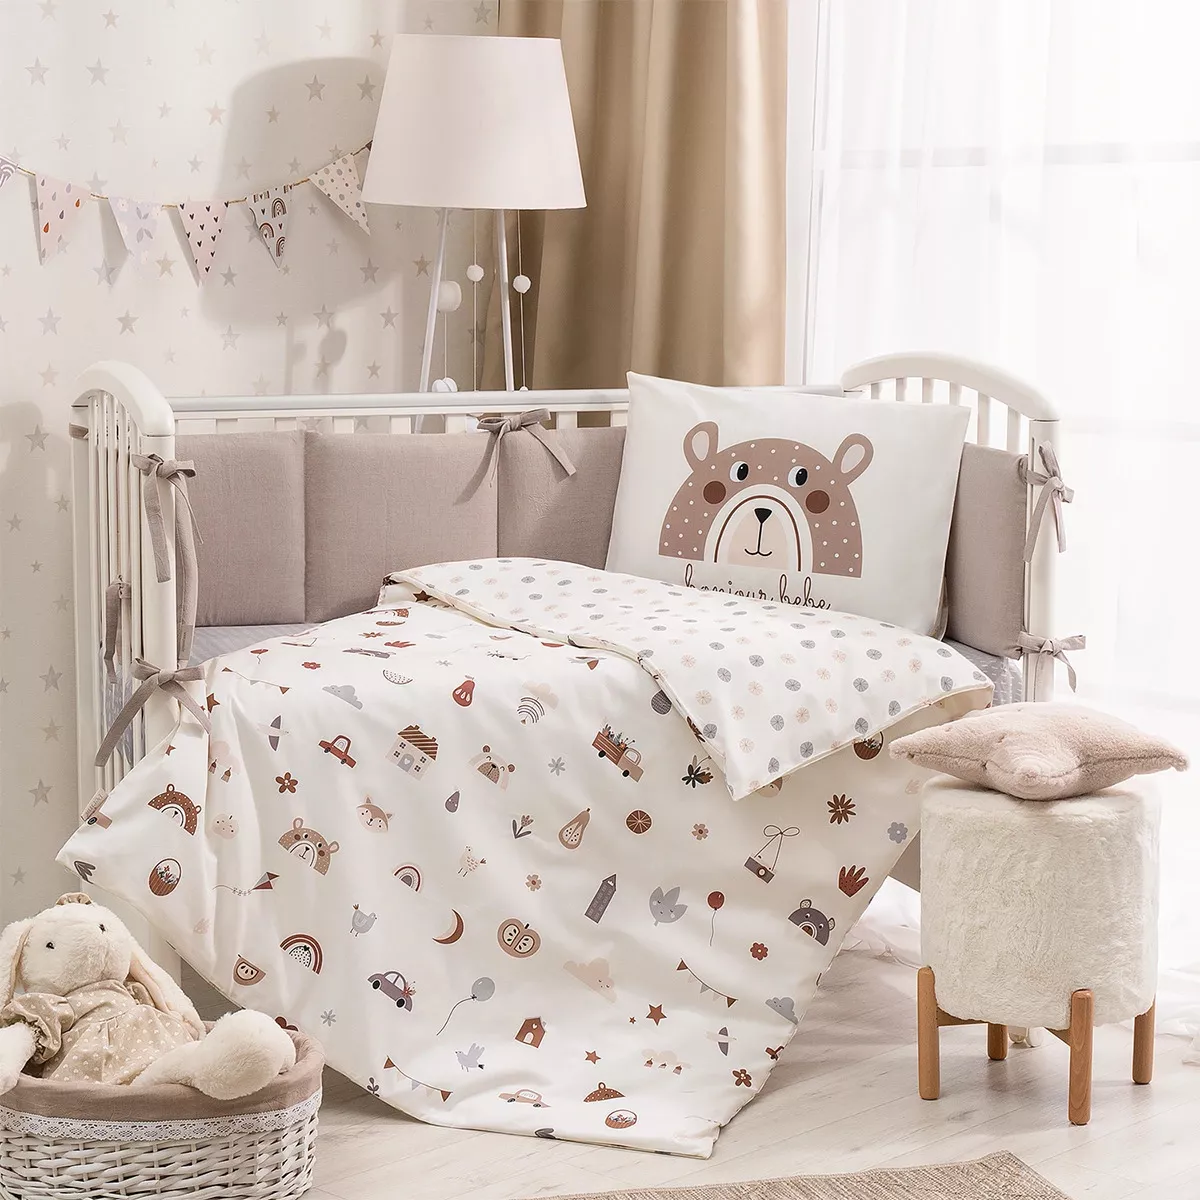 Детское постельное белье в кроватку для новорожденных. Комплекты lappetti, перина